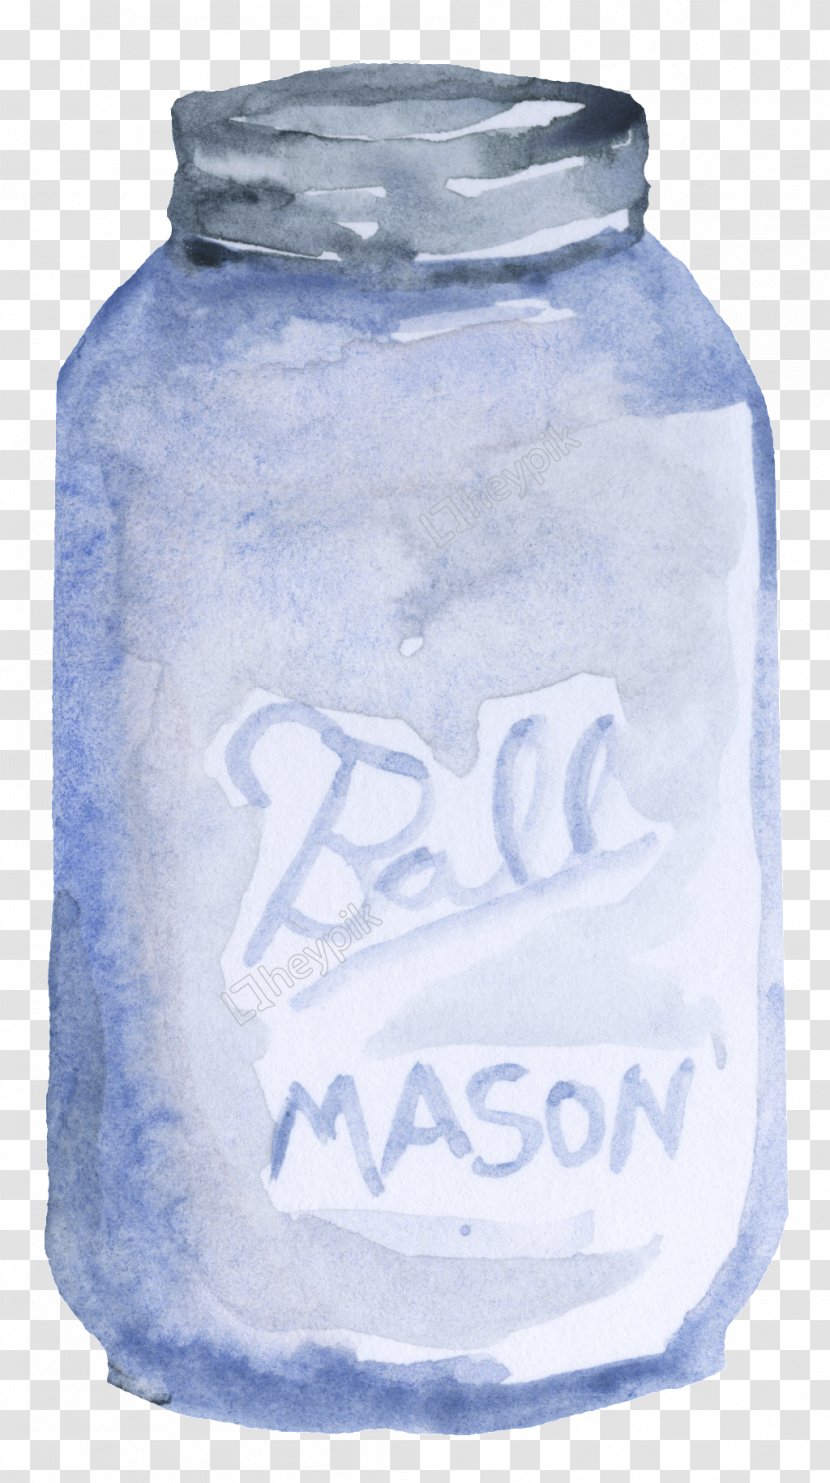 Mason Jar Water Bottles Image Vector Graphics - Bottle - Babys Breath Transparent Background Transparent PNG